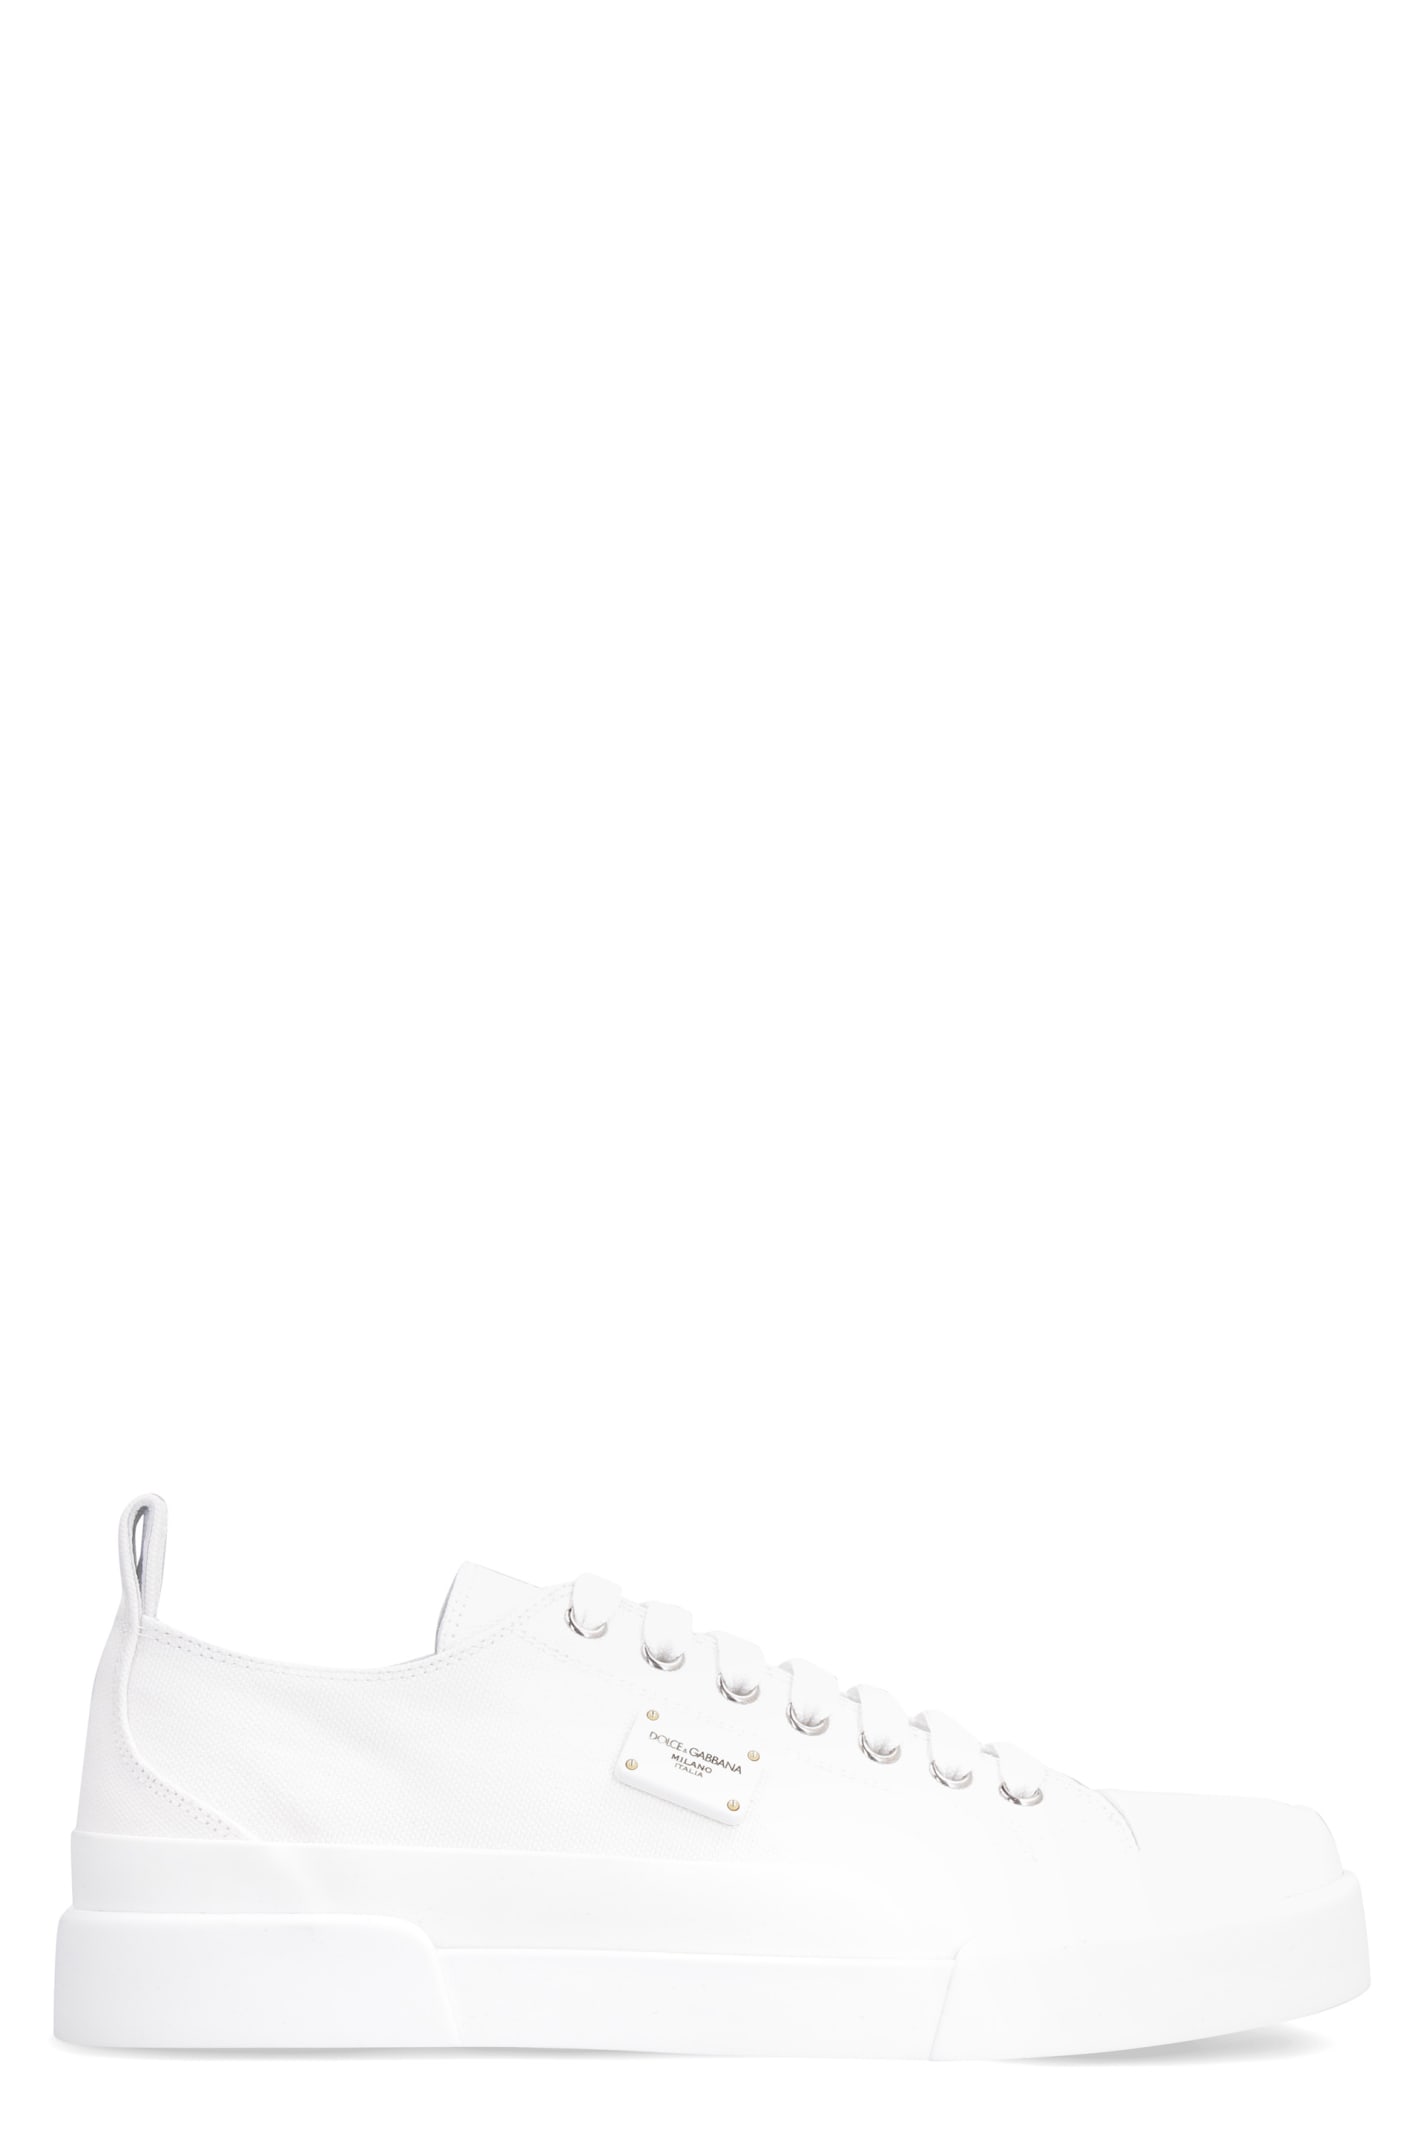 Dolce & Gabbana Portofino Canvas Low-top Sneakers